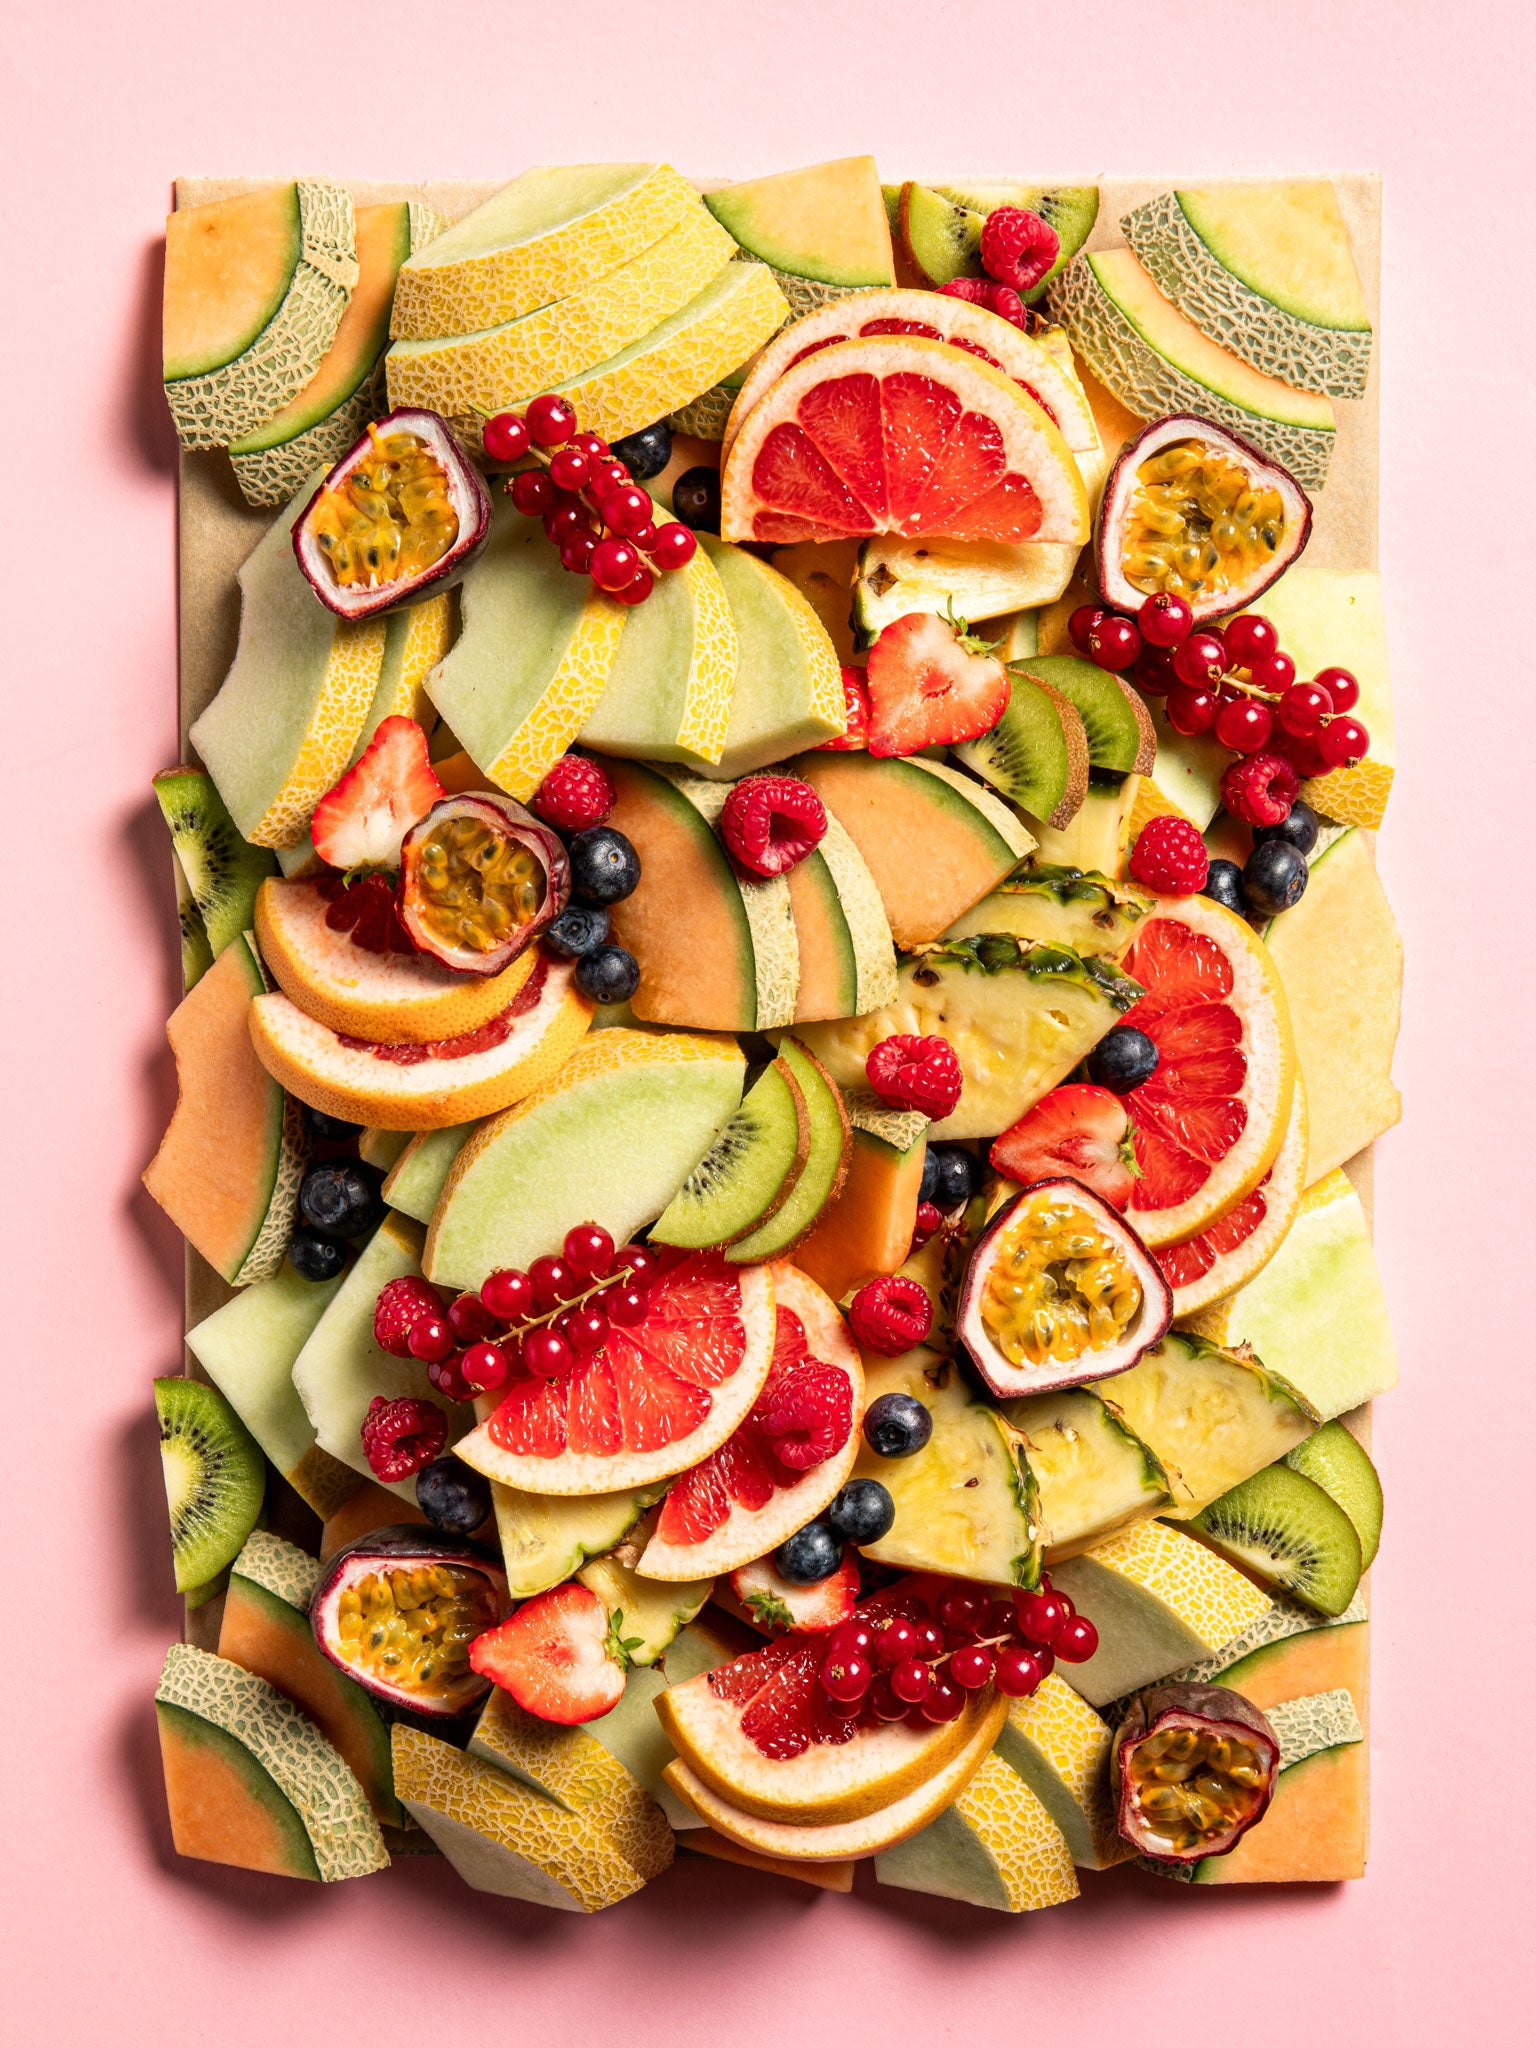  Grazing Obstplatte von Feasts of Eden mit saisonalen Früchten wie Honigmelone, Cantaloupe-Melone, Ananas, Passionsfrucht, Orange und verschiedene Beeren